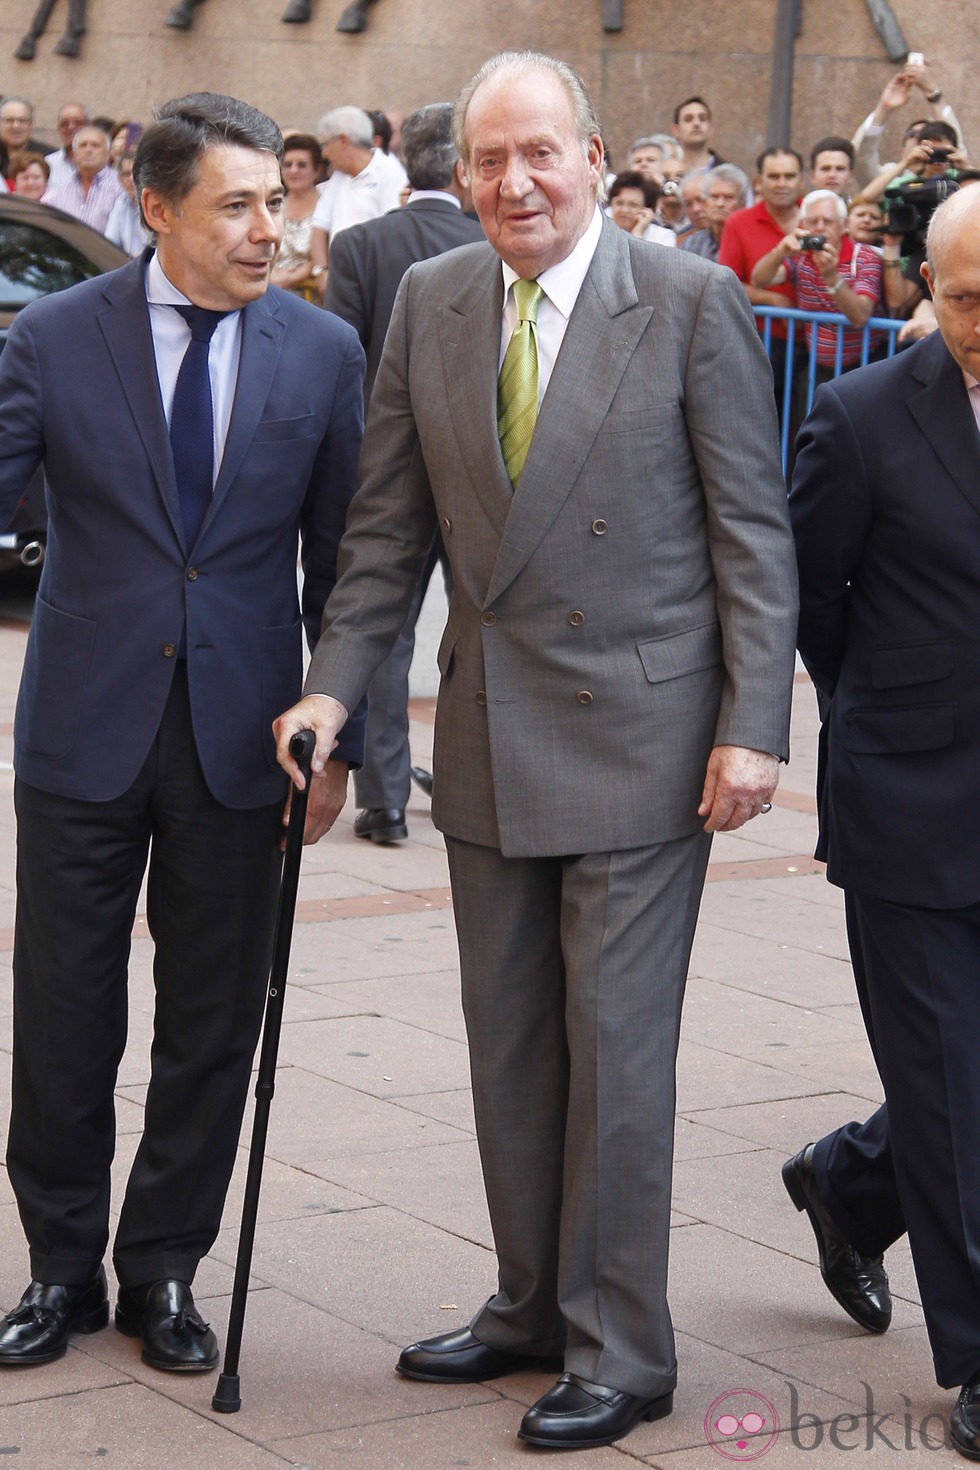 El Rey Juan Carlos en su última Corrida de la Beneficencia como Jefe del Estado